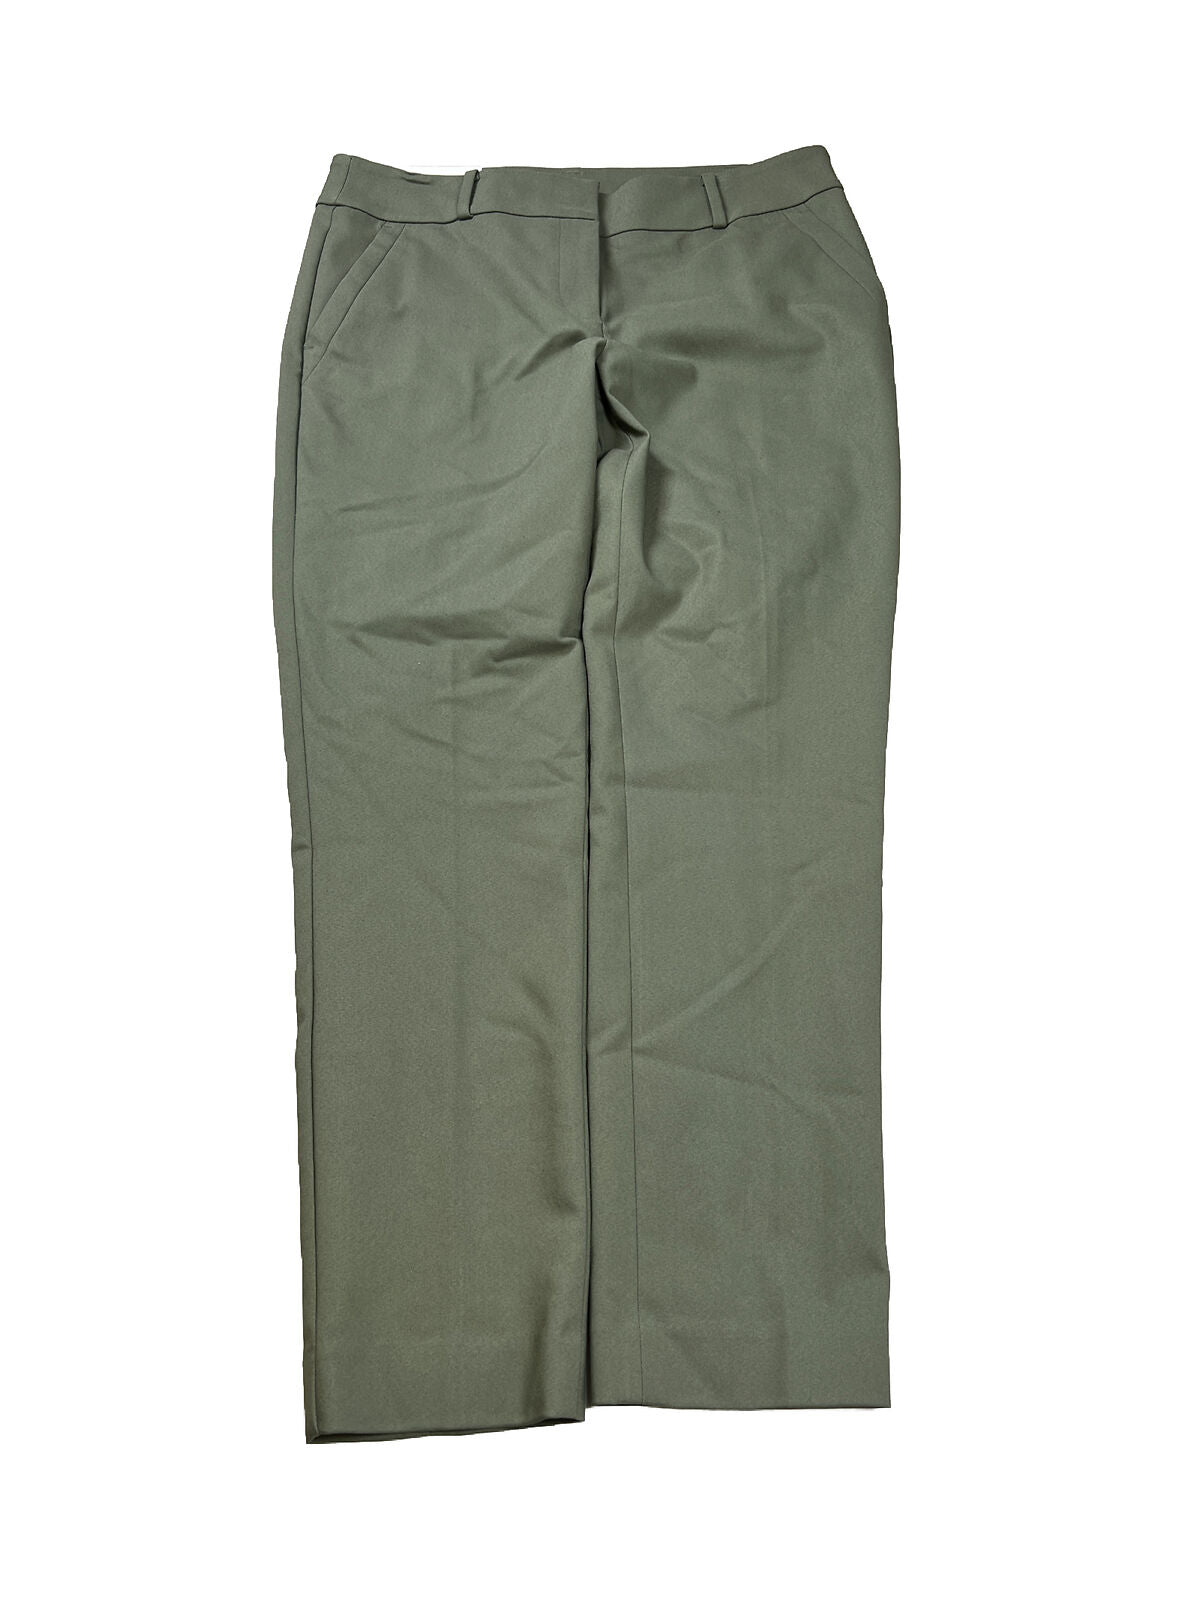 NEW LOFT Women's Green Modern Skinny Ankle Dress Pants - 10